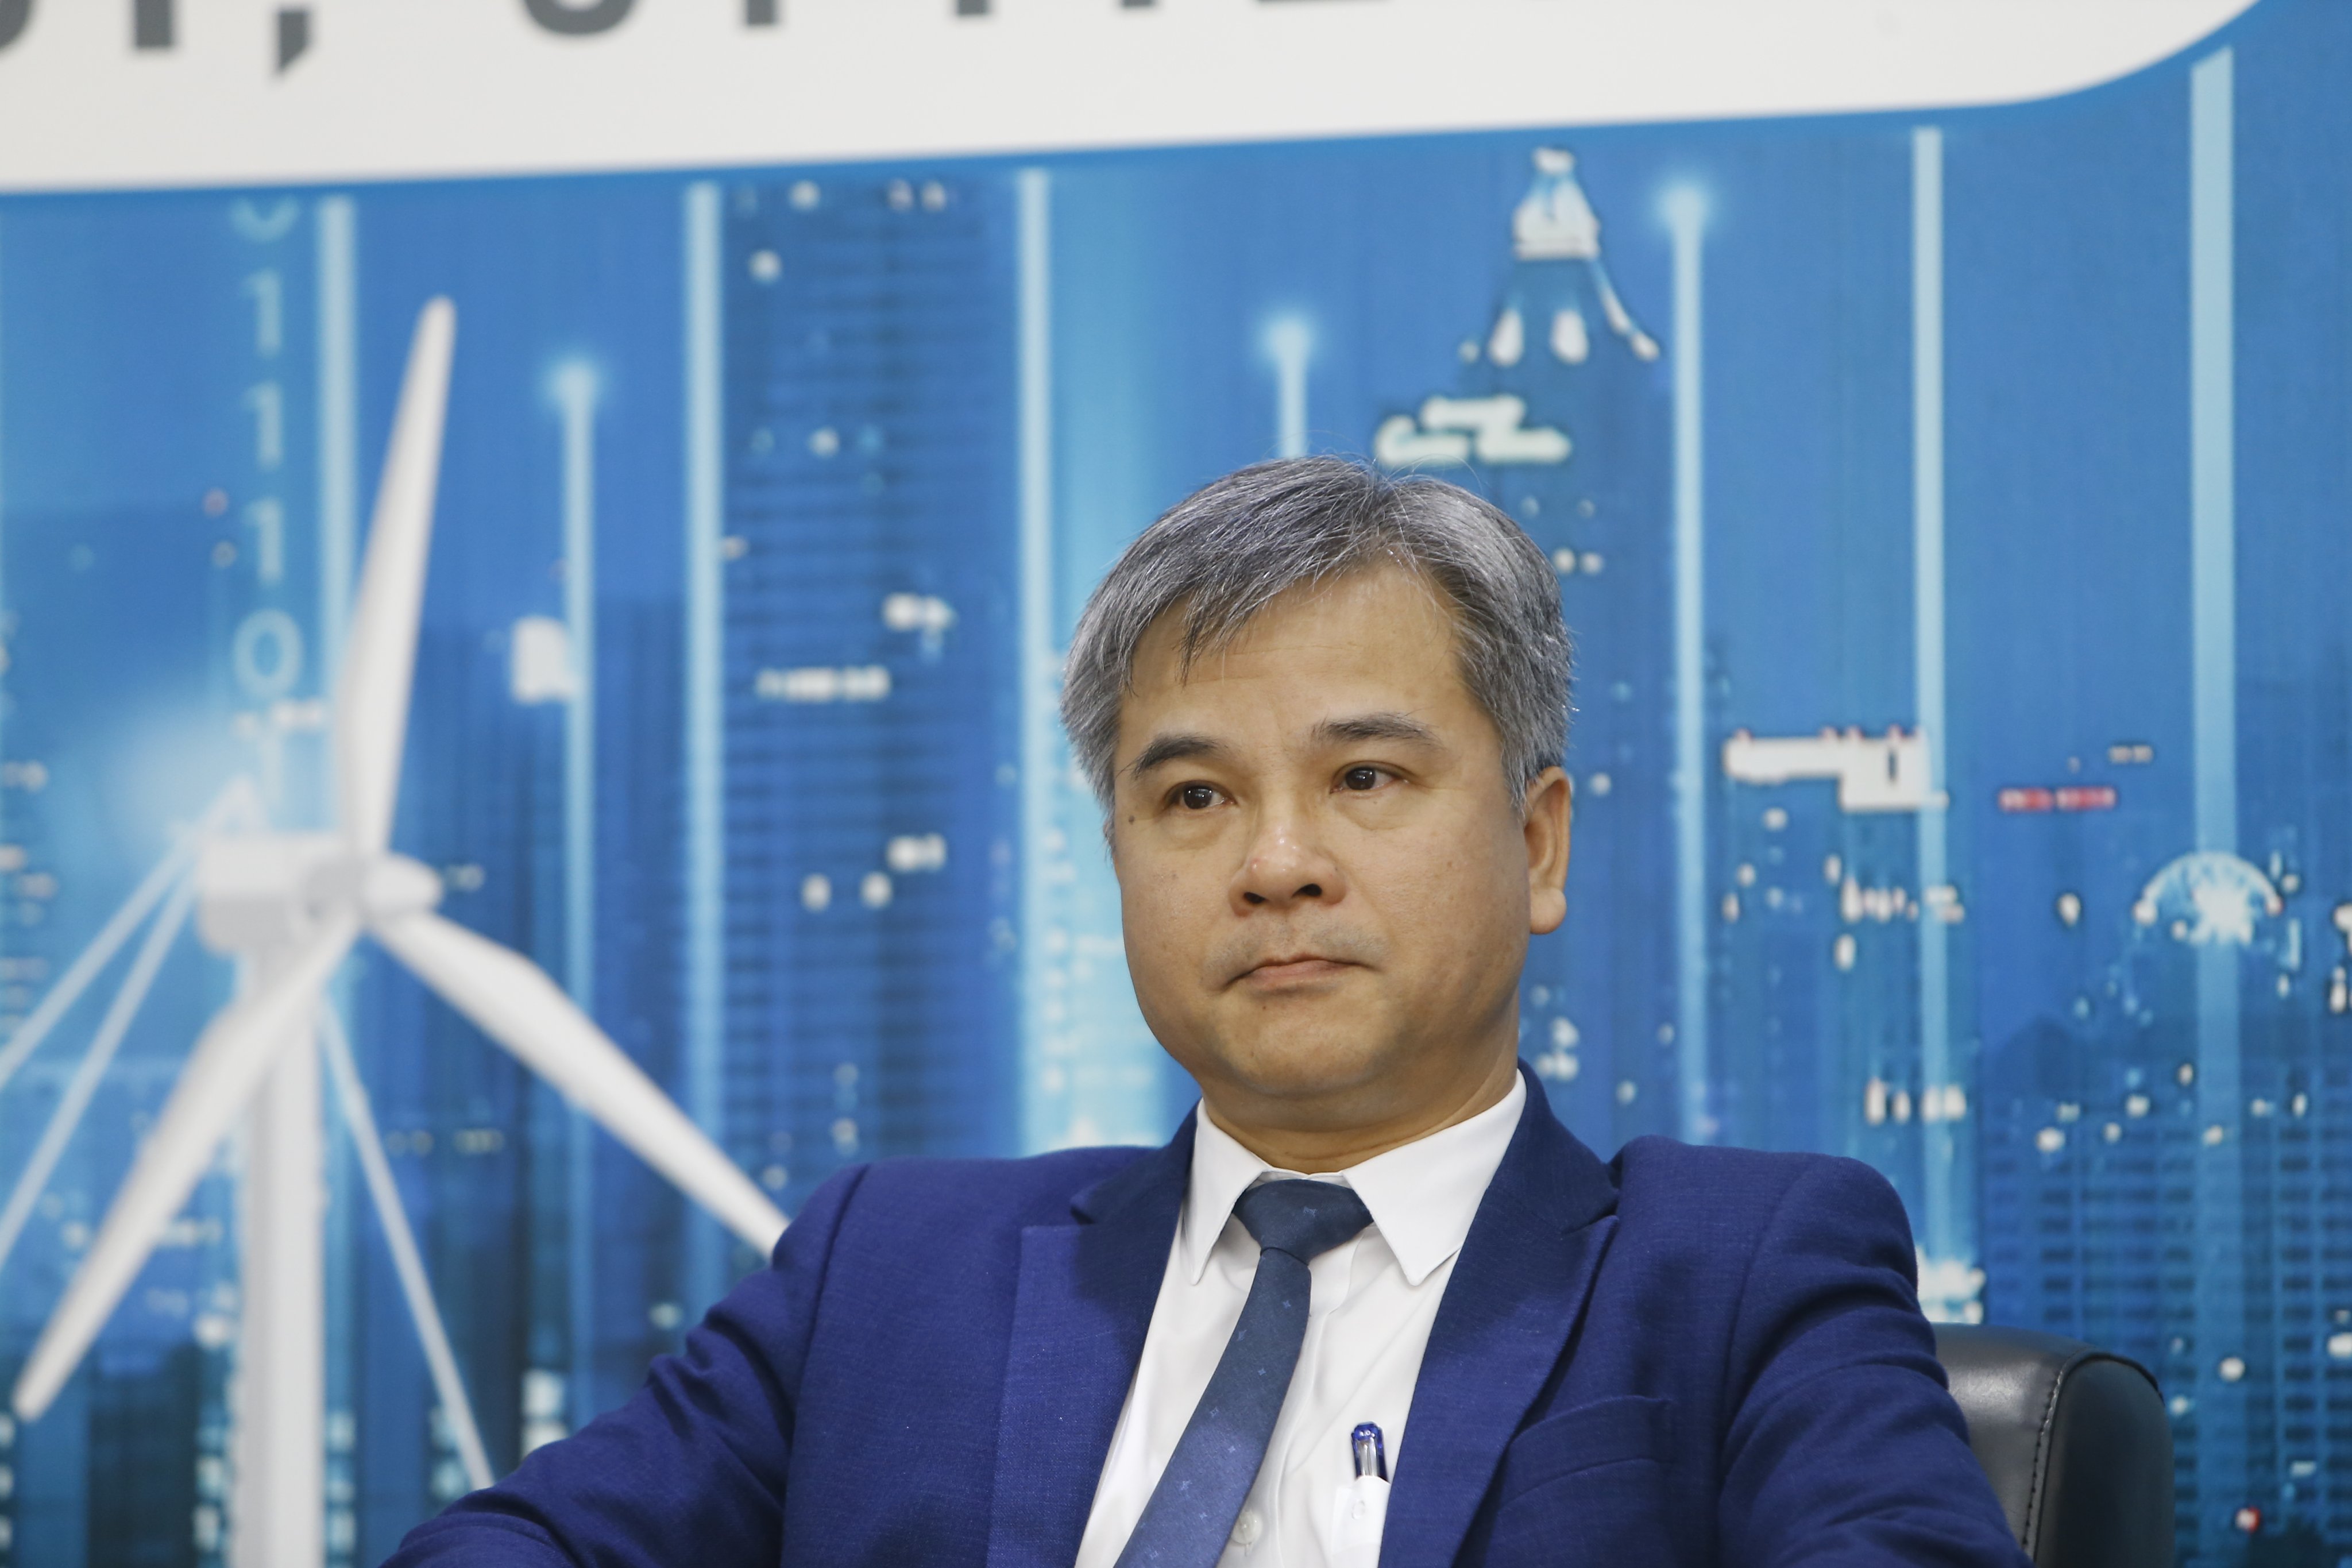 Nguyễn Tuấn Anh, Phó cục trưởng Cục Điện lực và Năng lượng Tái tạo - Bộ Công thương;  